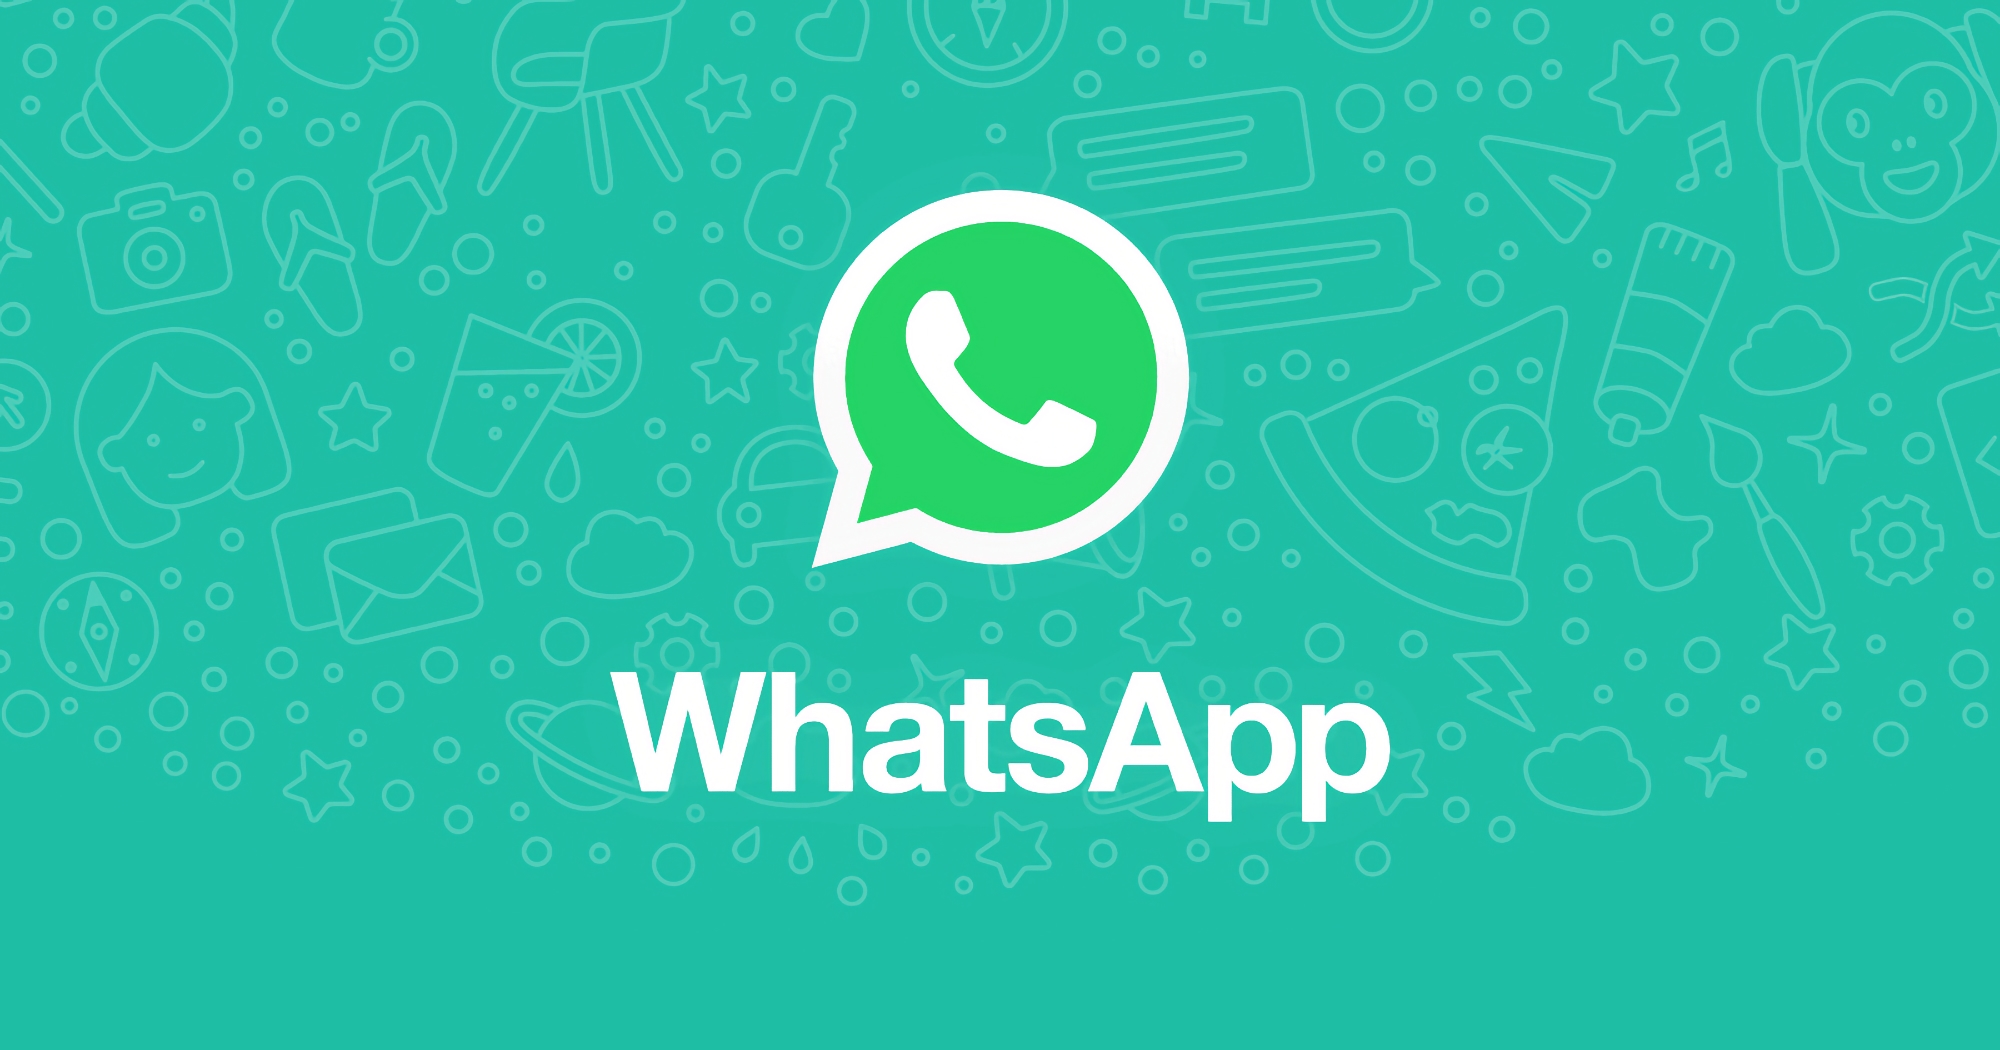 Meta przygotowuje nowe funkcje dla WhatsApp, już testowane na Androidzie, iOS i PC